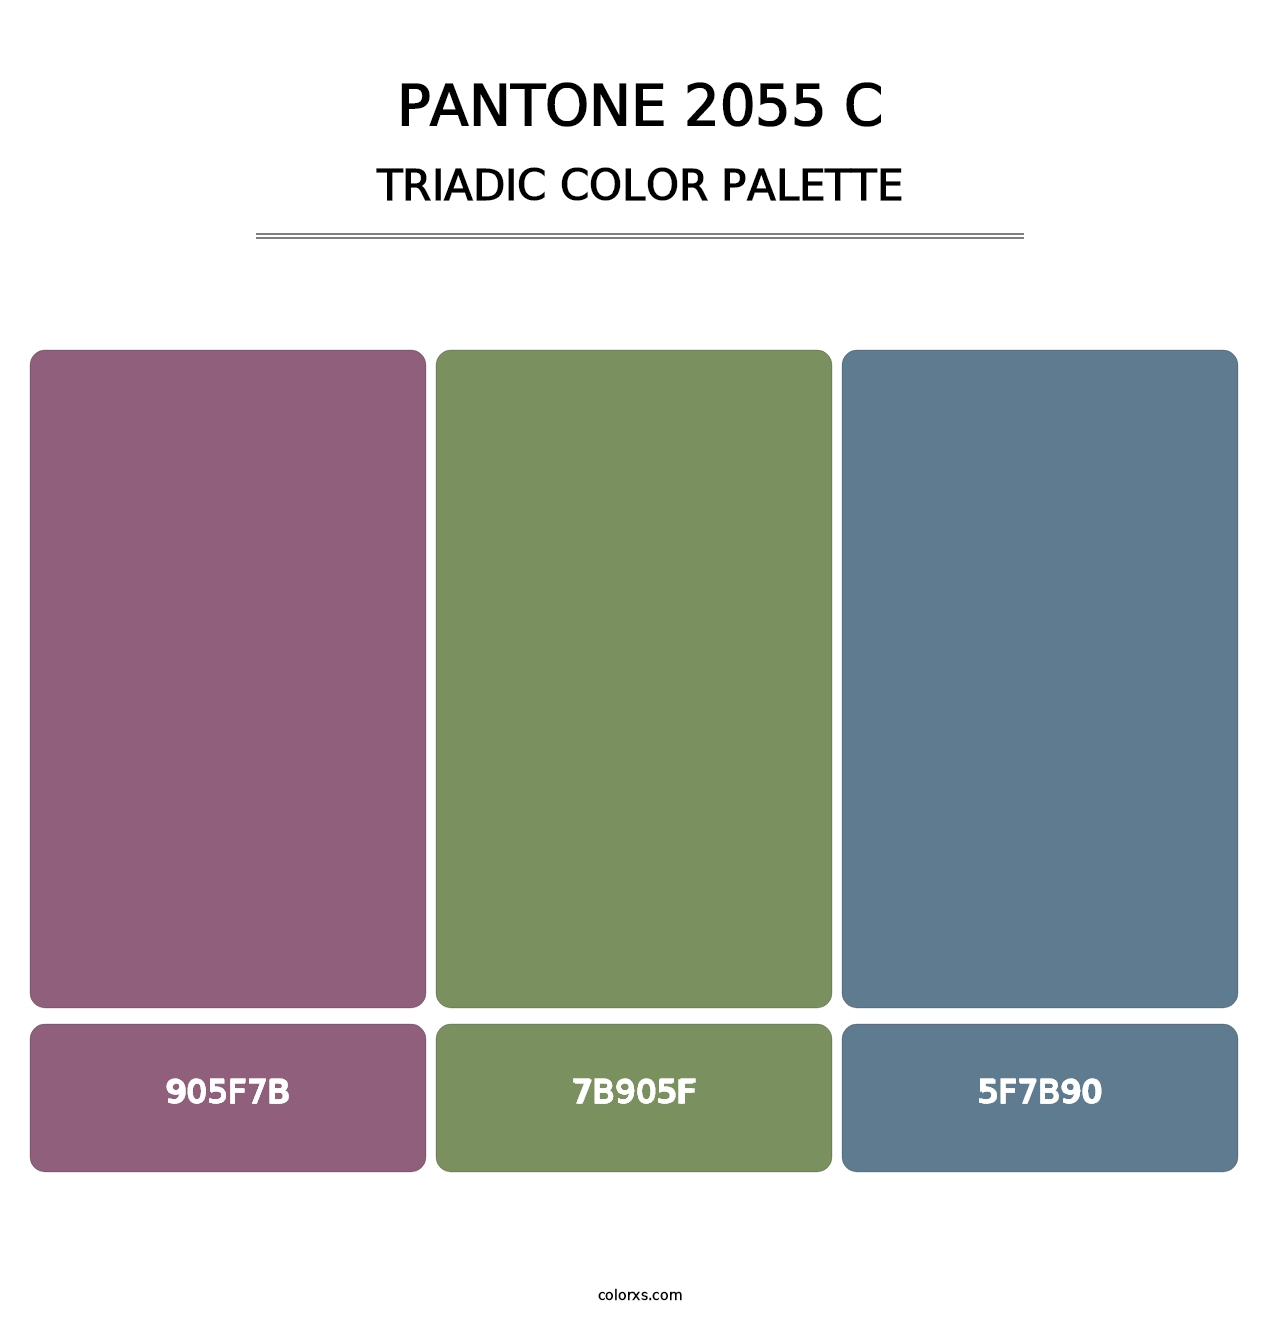 PANTONE 2055 C - Triadic Color Palette